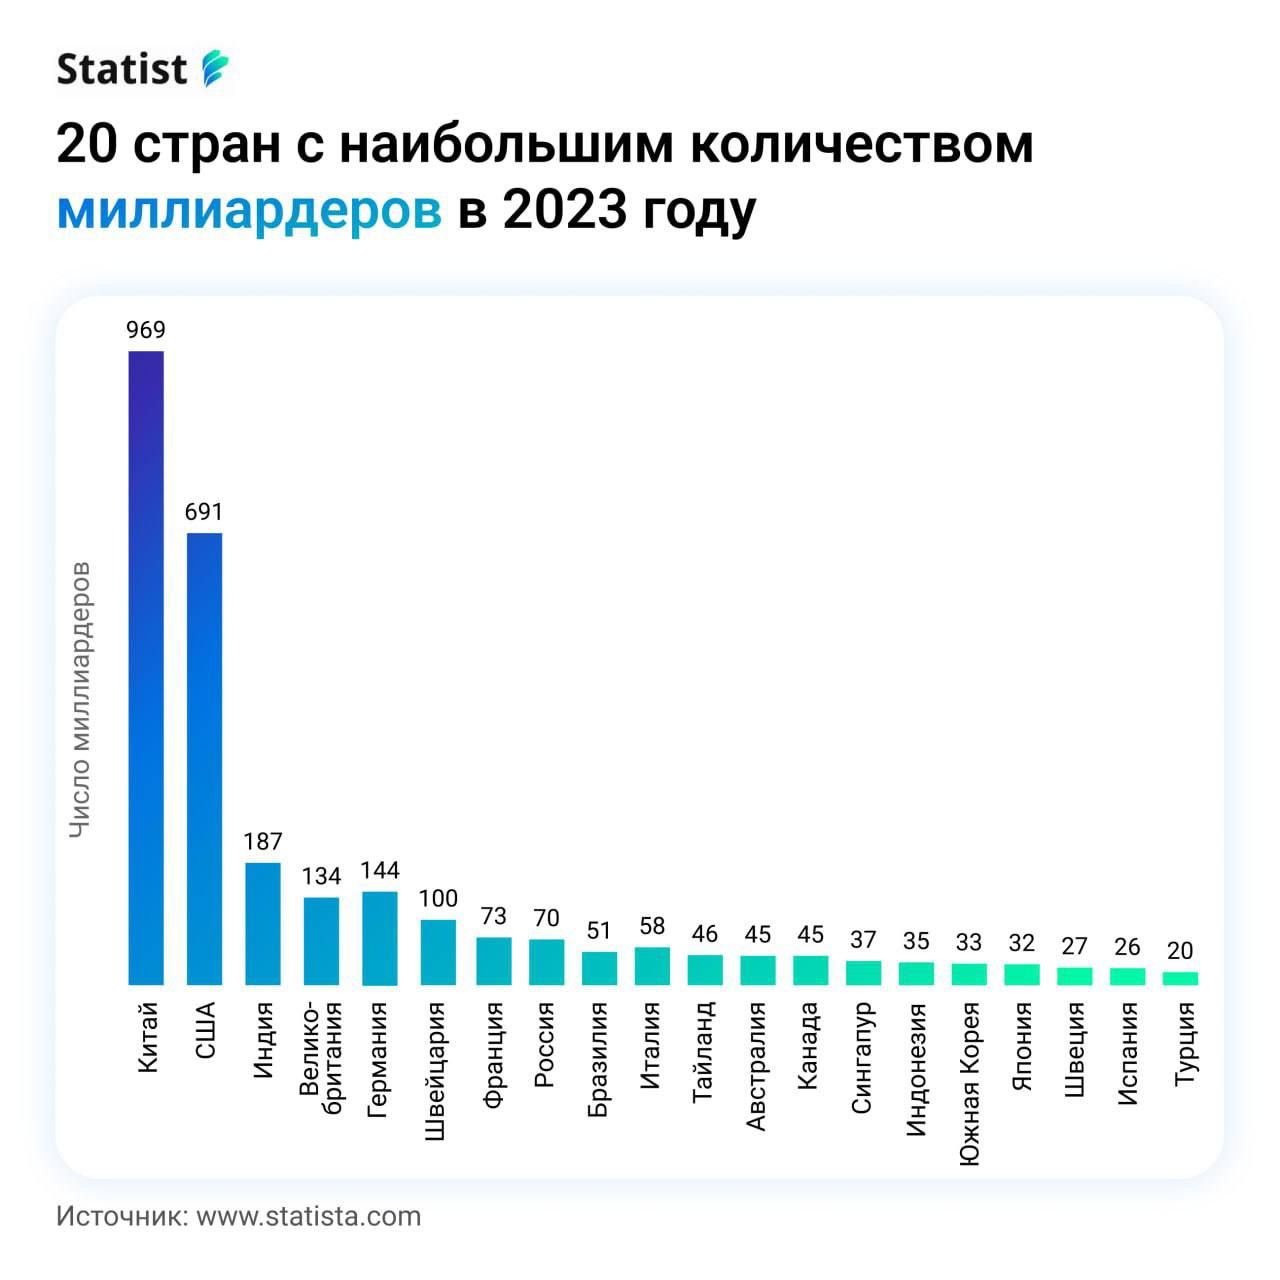 Топ-20 стран по количеству миллиардеров в 2023 году